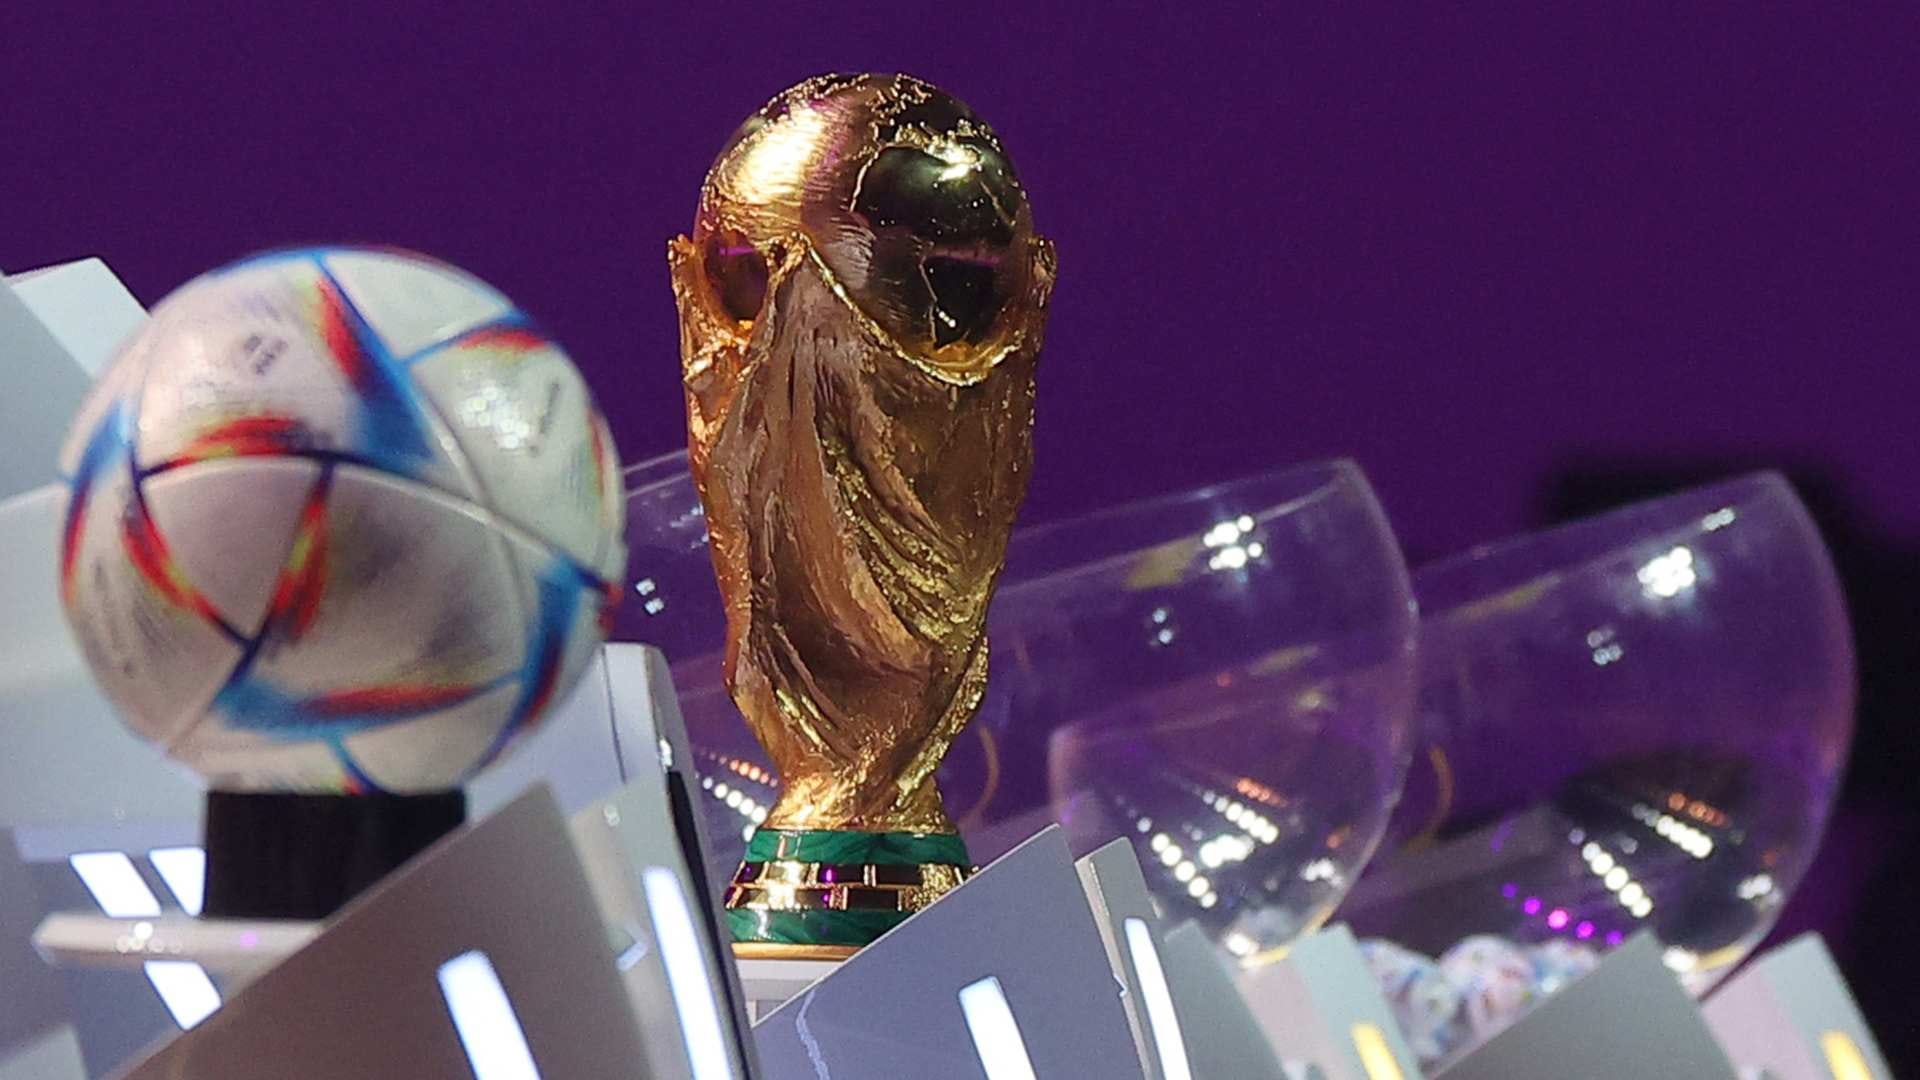 Jogos das quartas de final do Mundial prometem ser emocionantes - Copa -  Diário de Canoas